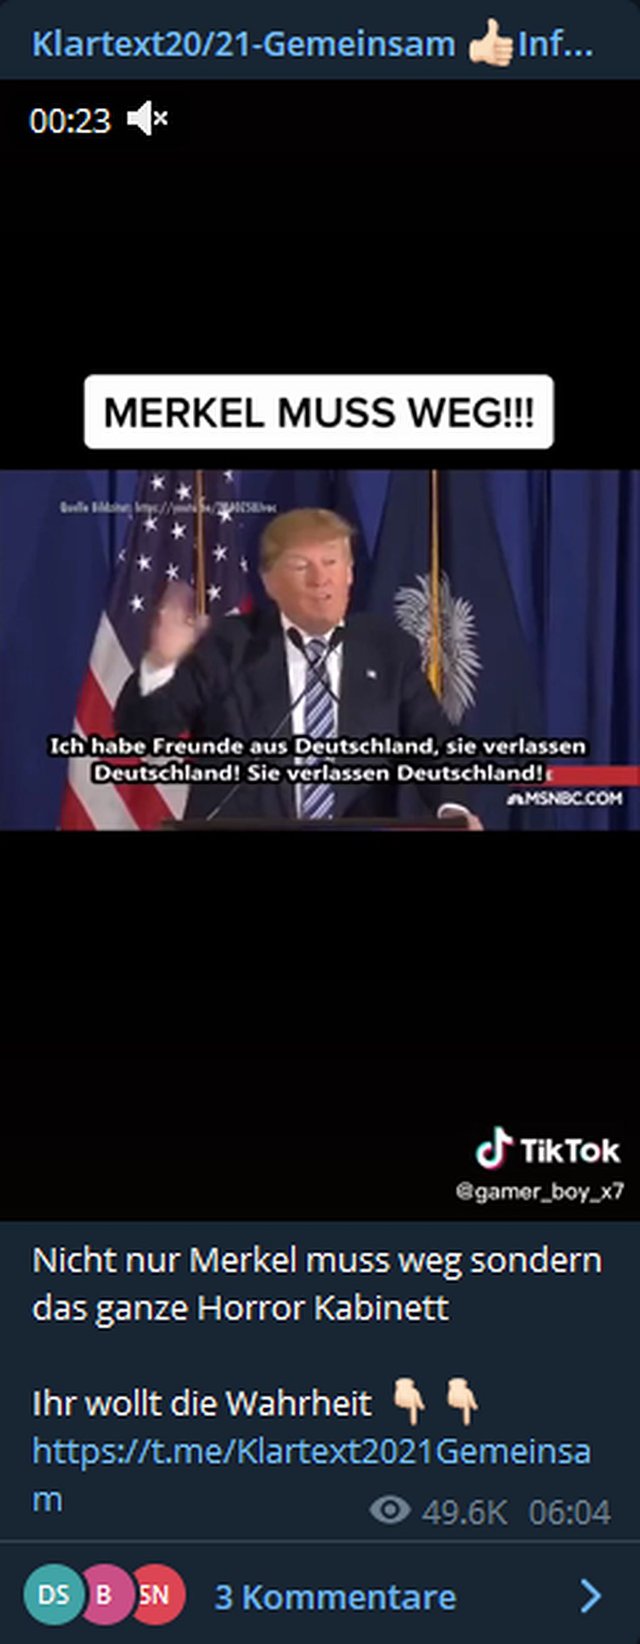 Ich habe Freunde aus Deutschland, die verlassen Deutschland – Donald Trump.jpg